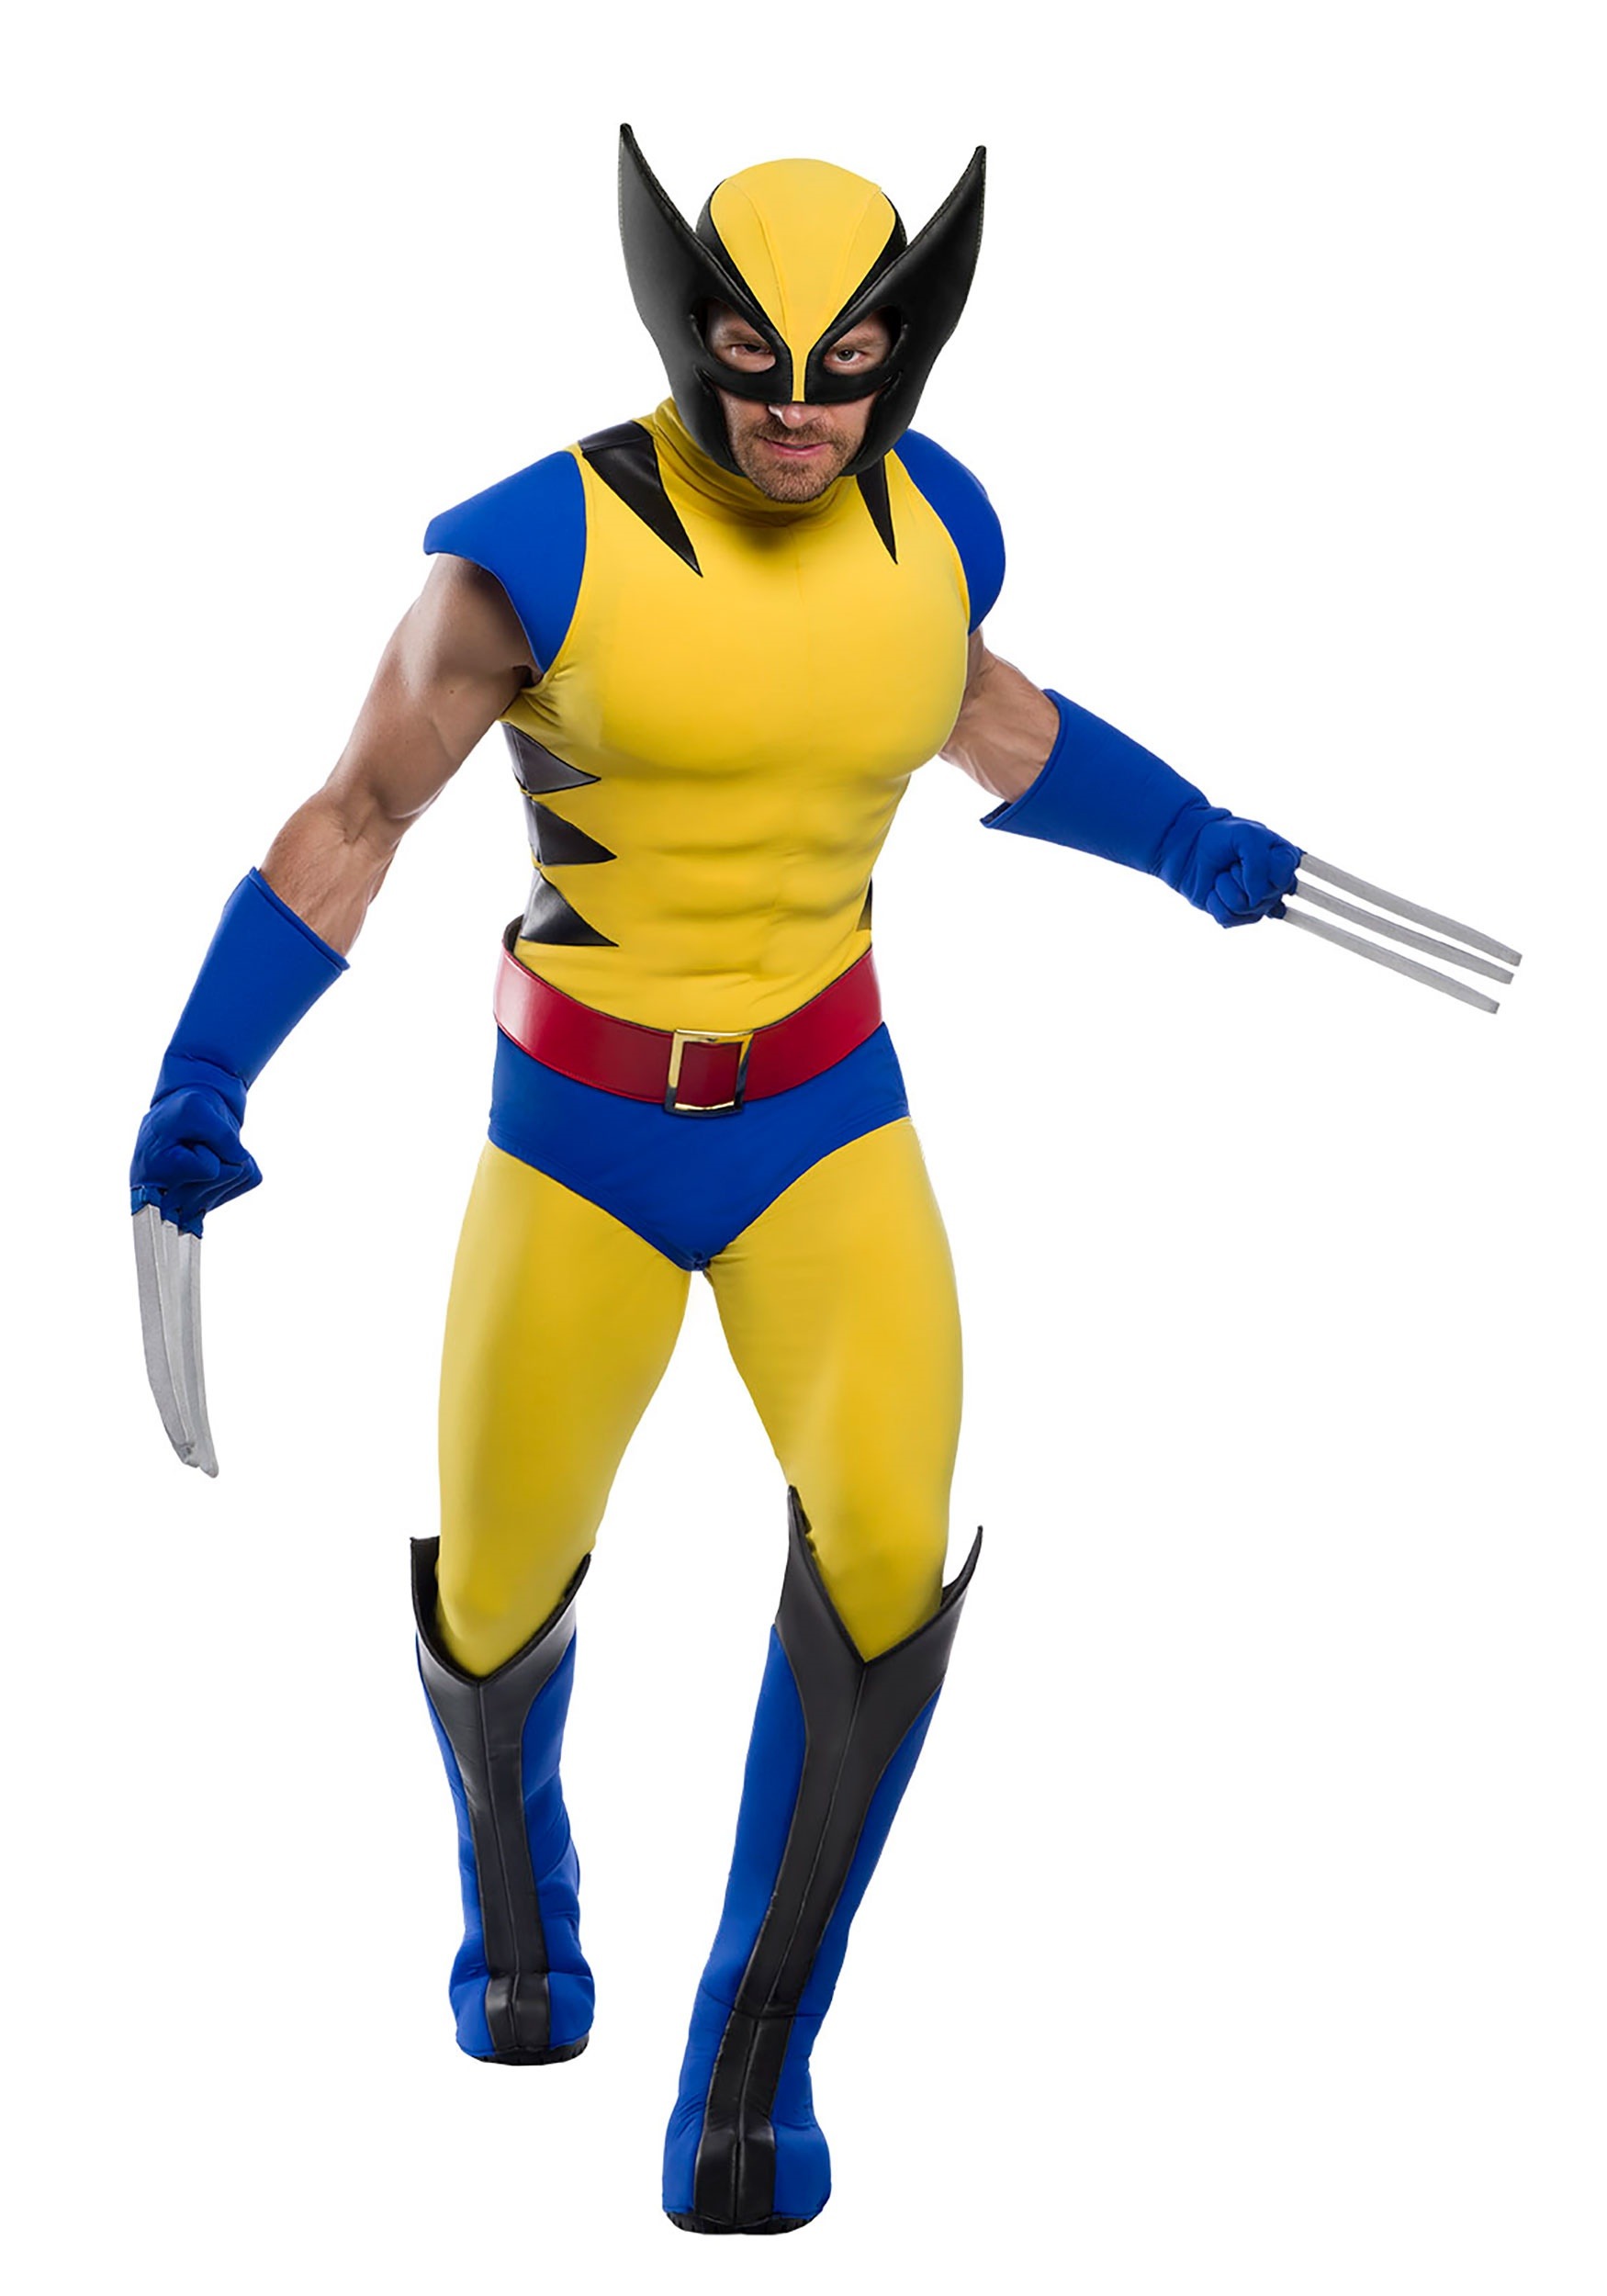 9.) Premium Marvel Wolverine Men's Costume